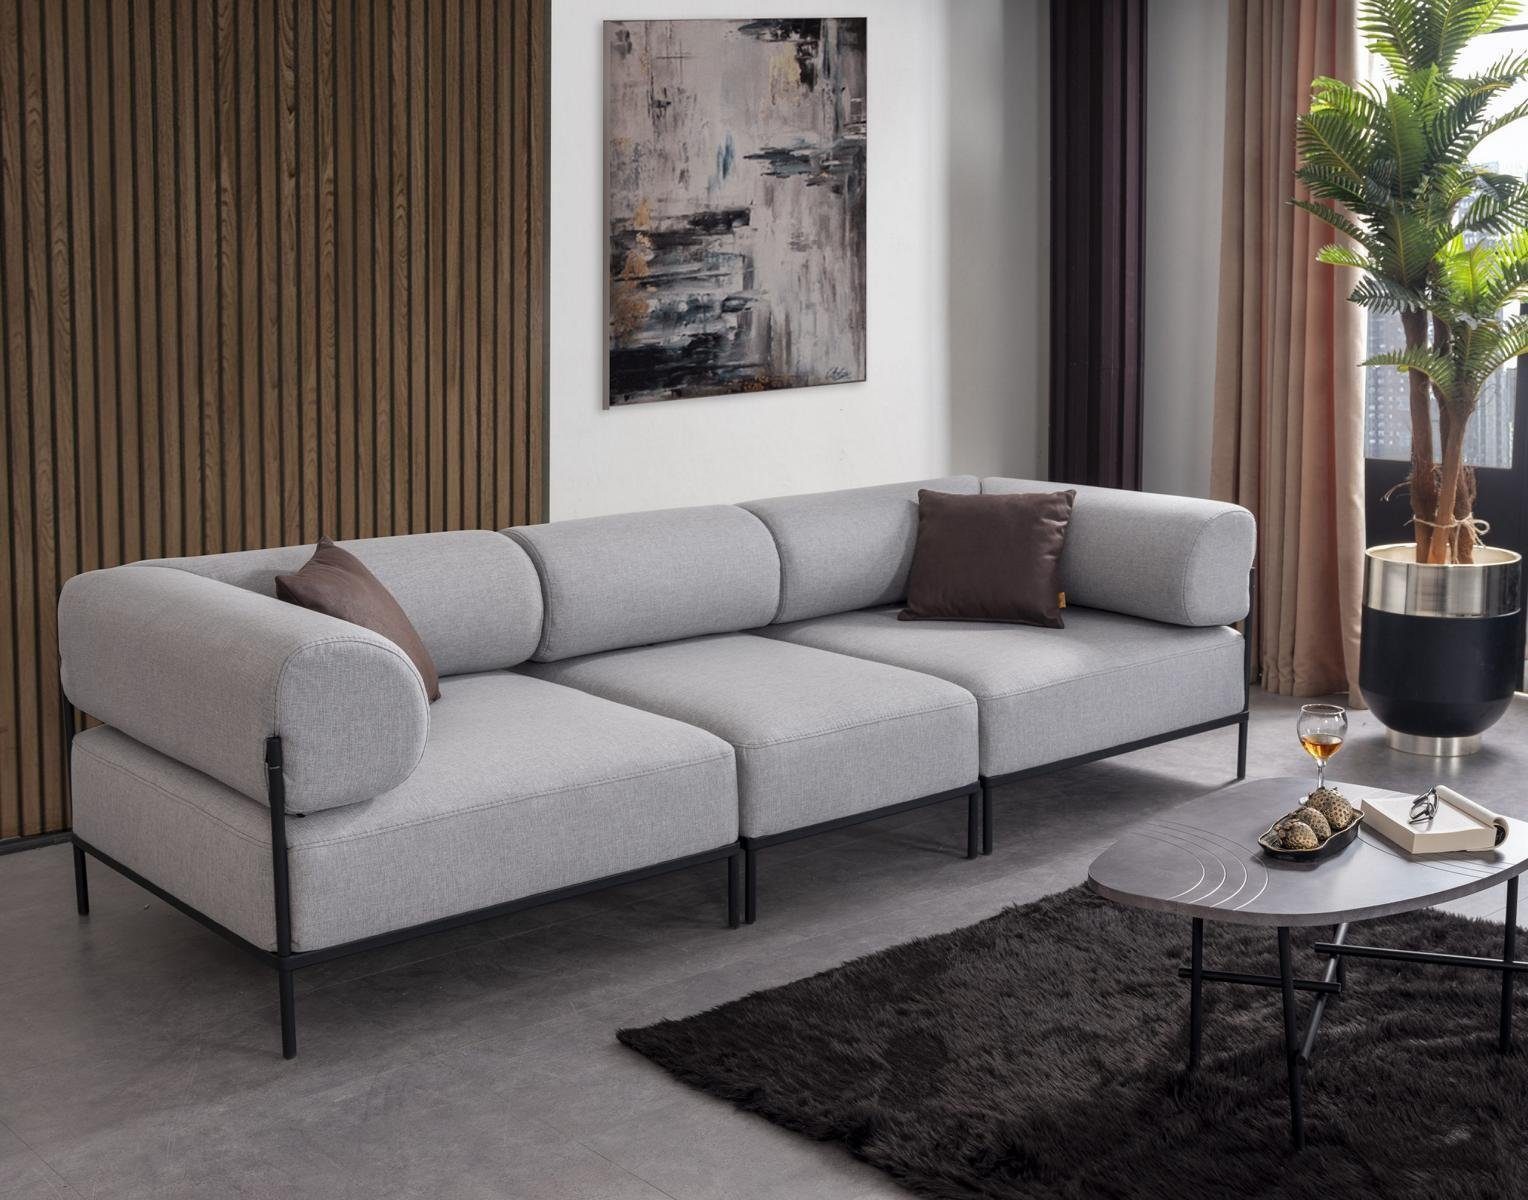 JVmoebel Sofa Wohnzimmer Sofa Dreisitzer Made Teile, Europa Grau 3 in Einrichtung, Polstermöbel Couch Luxus